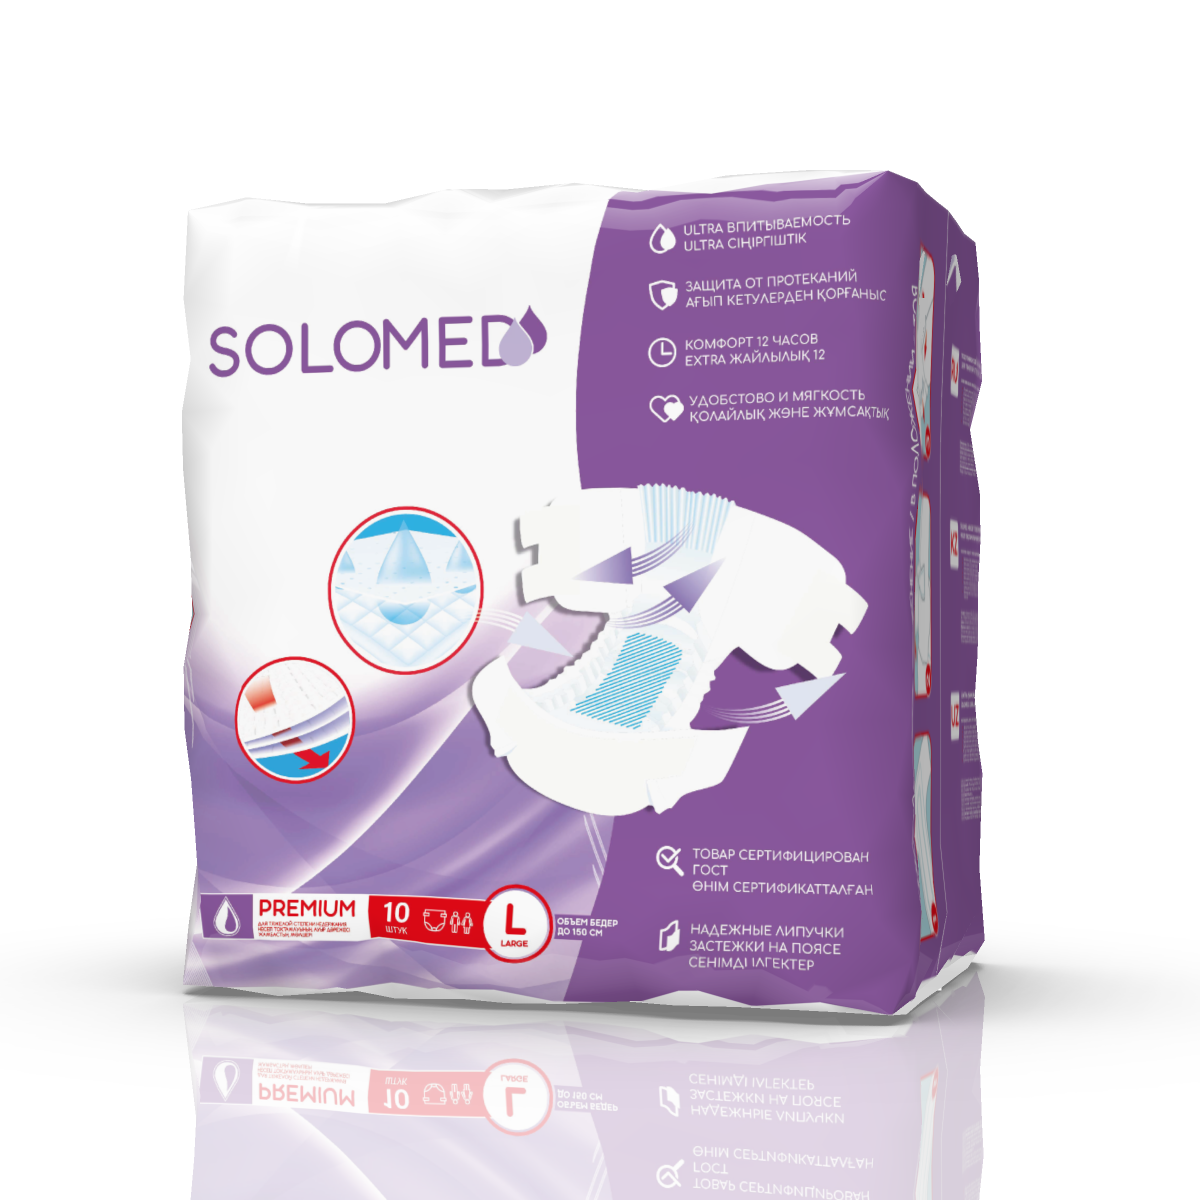 Solomed Premium, подгузники для взрослых (размер L), 10 шт. платье домашнее женское с карманами мишка с сердцем серый меланж размер 50